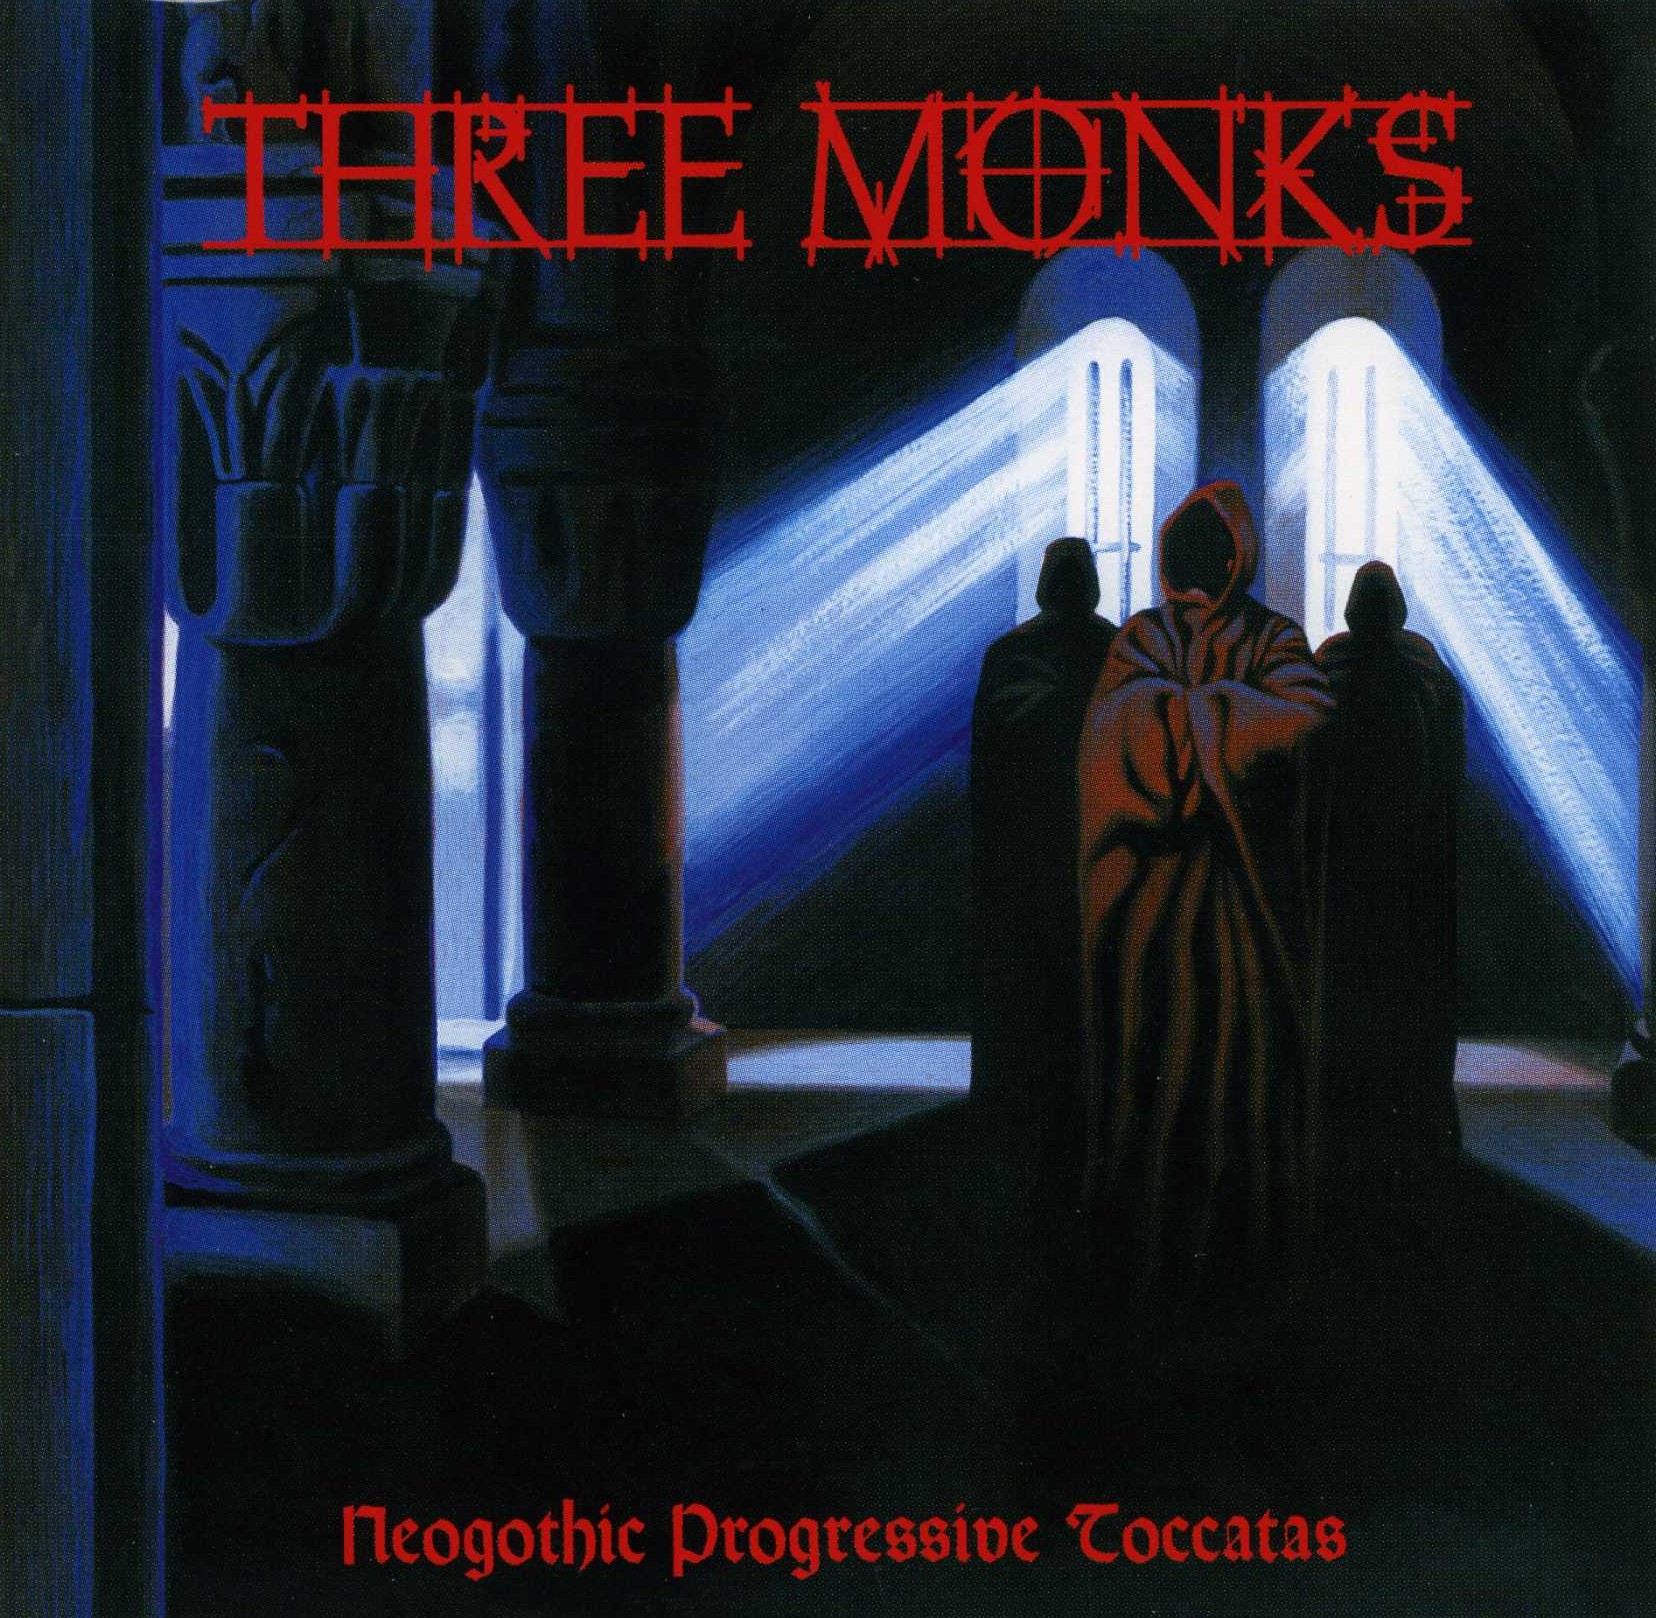 Three Monks - Neogothic Progressive Toccatas cover